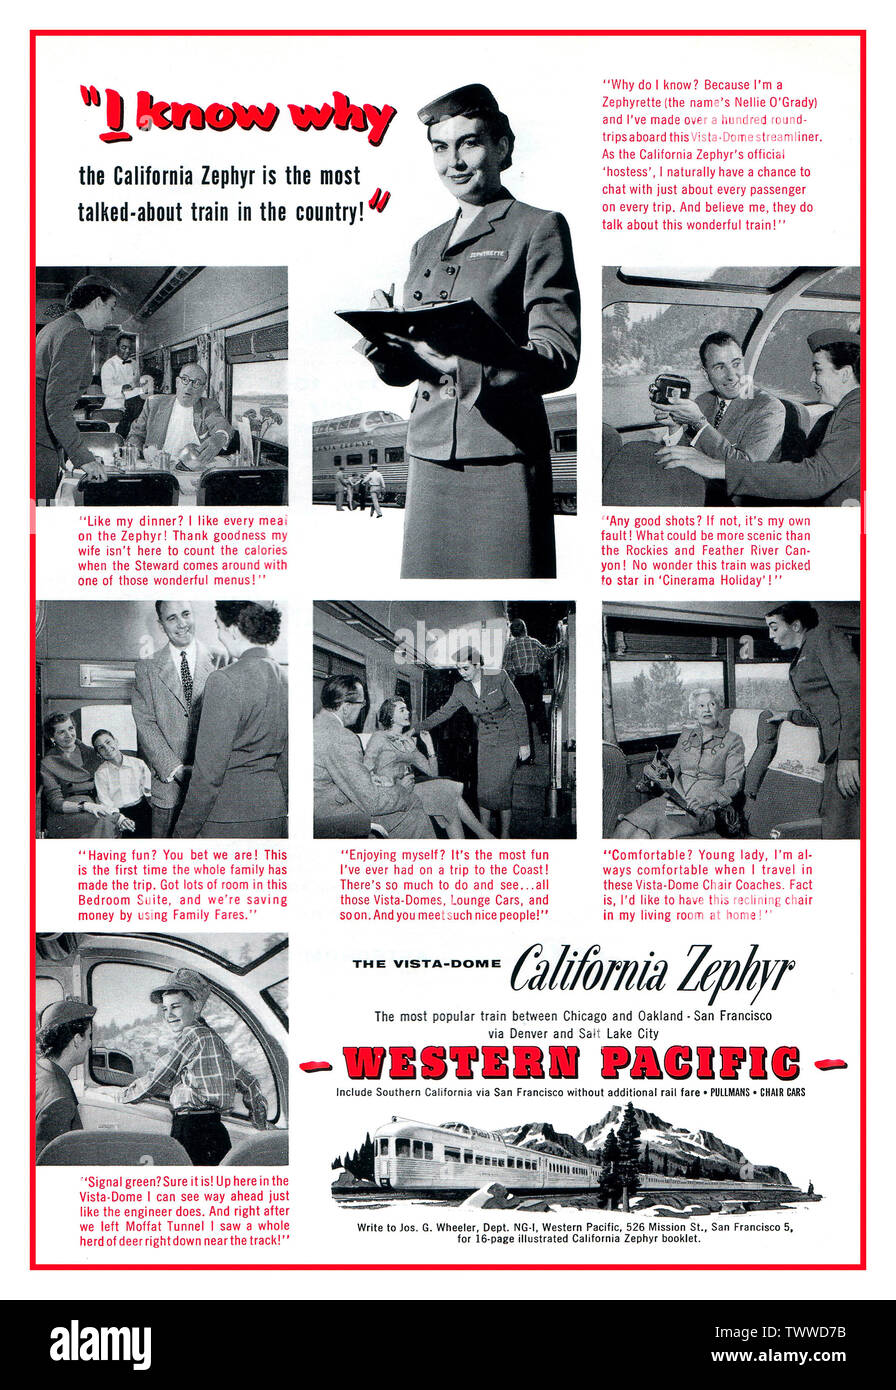 La publicité Vintage American Rail train 1956 de CALIFORNIA ZEPHYR 1950 pour le California Zephyr de Western Pacific, mettant en vedette une hôtesse de train en uniforme Zephyrette interagissant avec une variété de passagers à bord du train. Février 1956 publicité pour le California Zephyr Western Pacific train Railroad Railway Banque D'Images